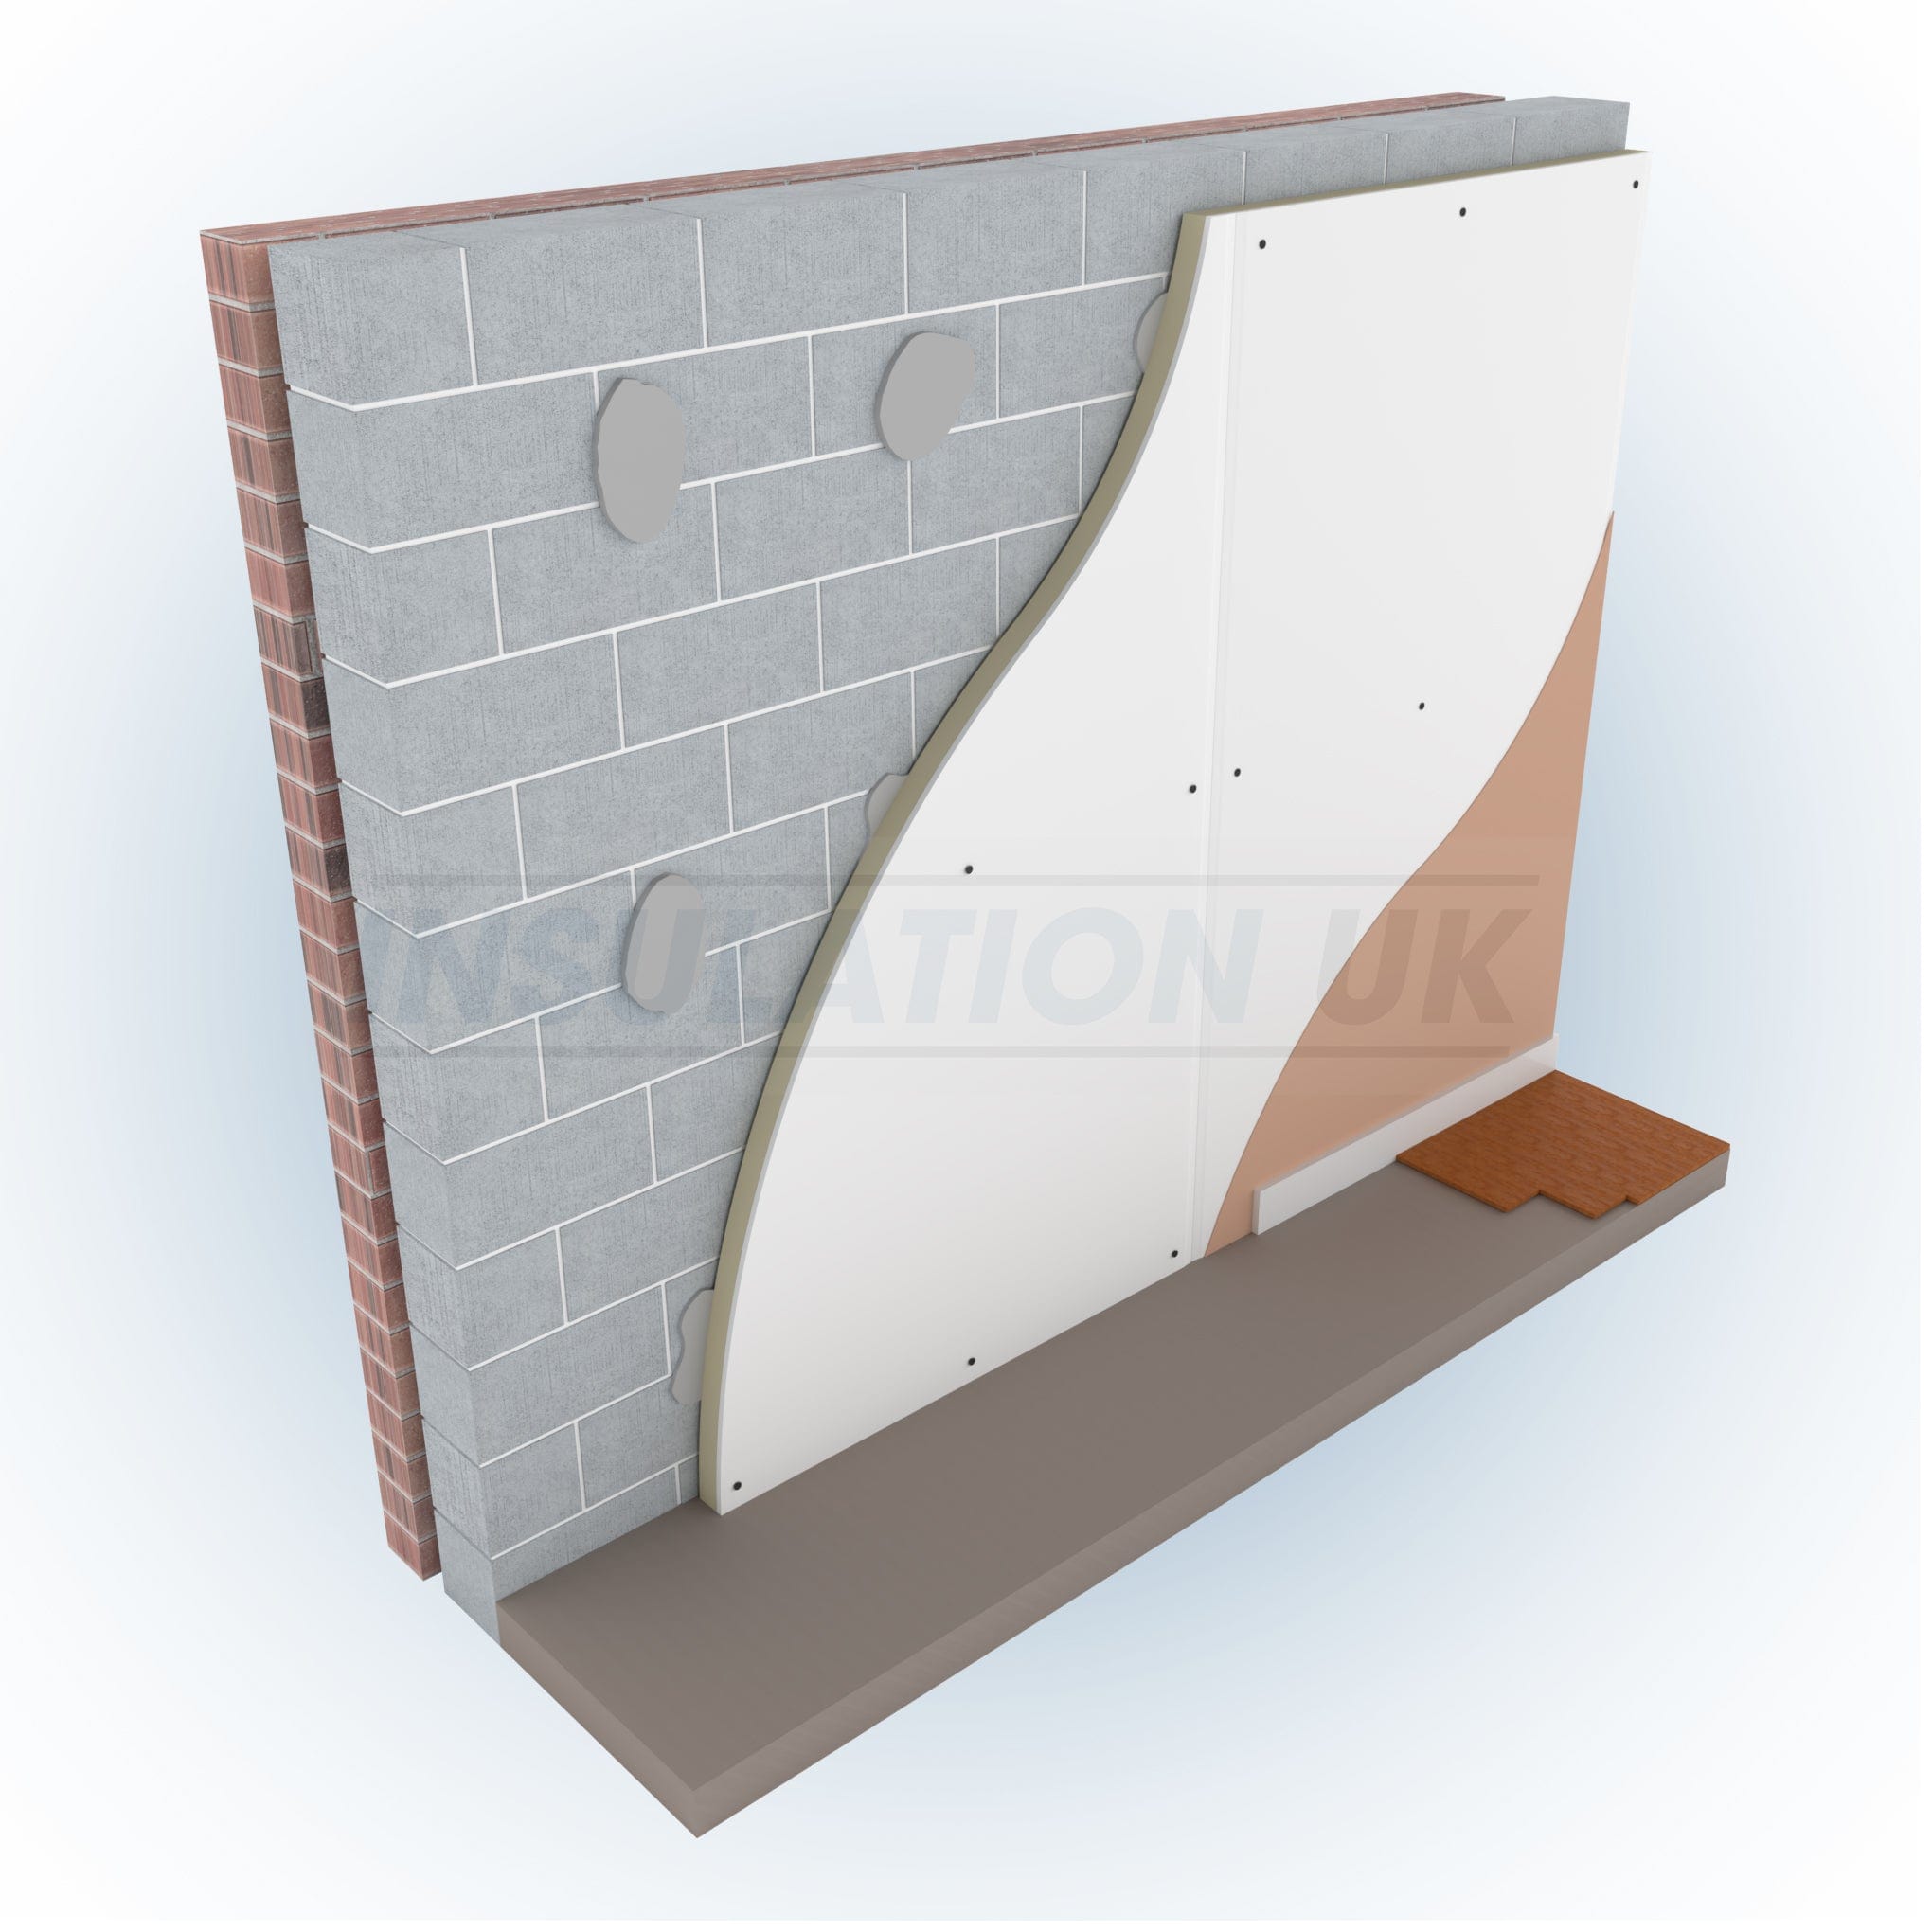 Tekwarm Insulation Tekwarm Thermal Laminate PIR Plasterboard | 2400mm x 1200mm - Bulk Buy